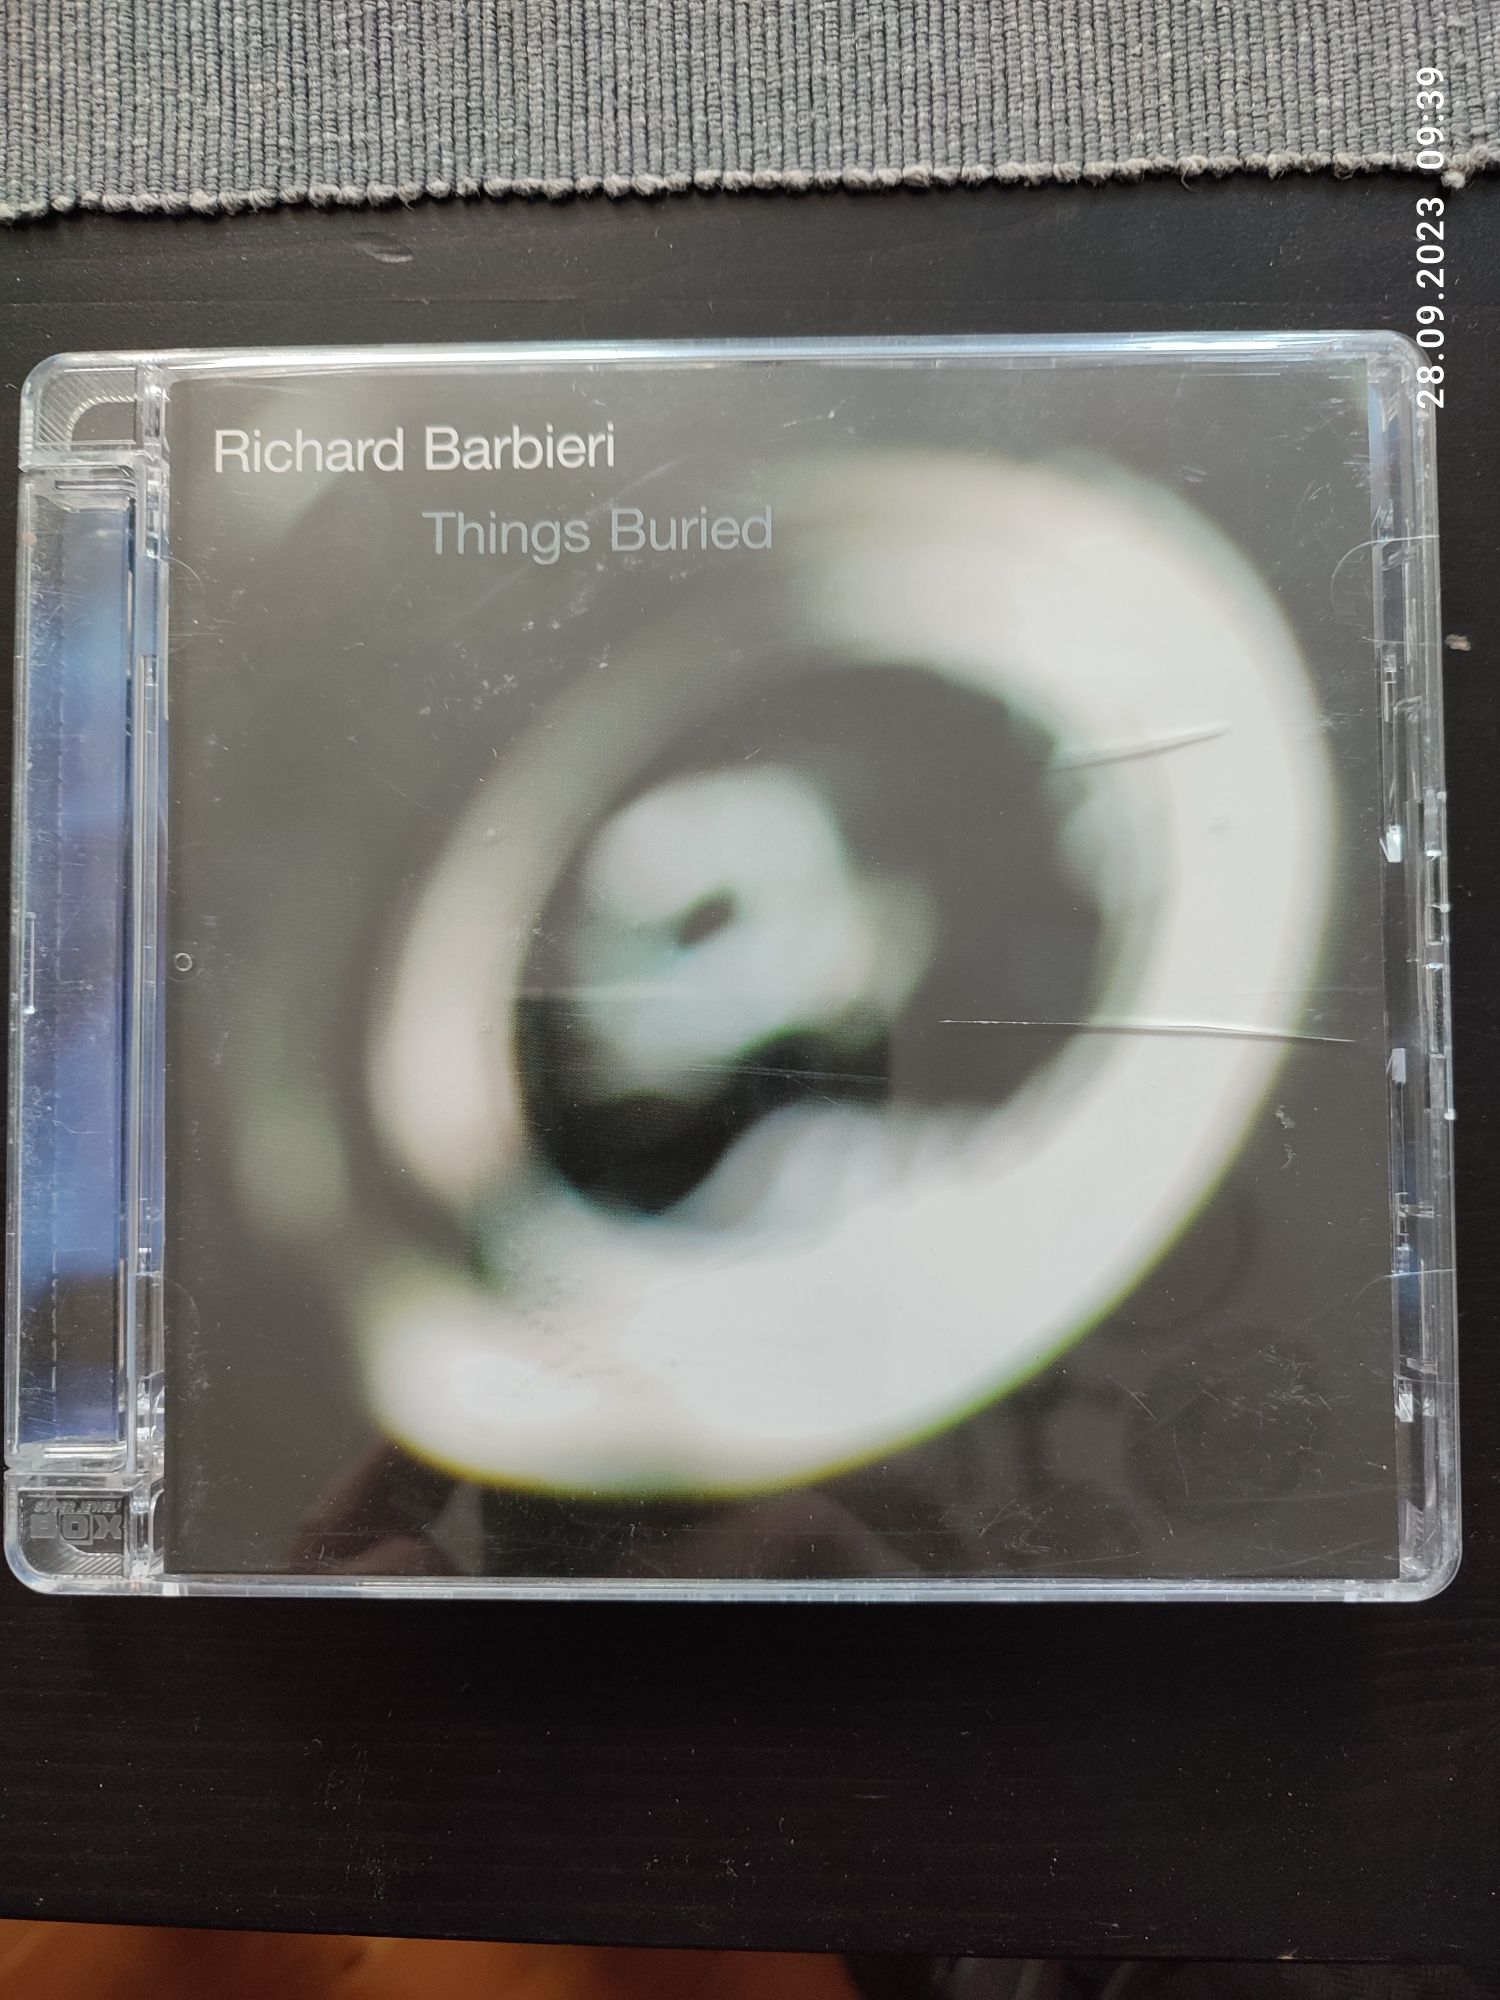 Richard Barbieri - Things Burried